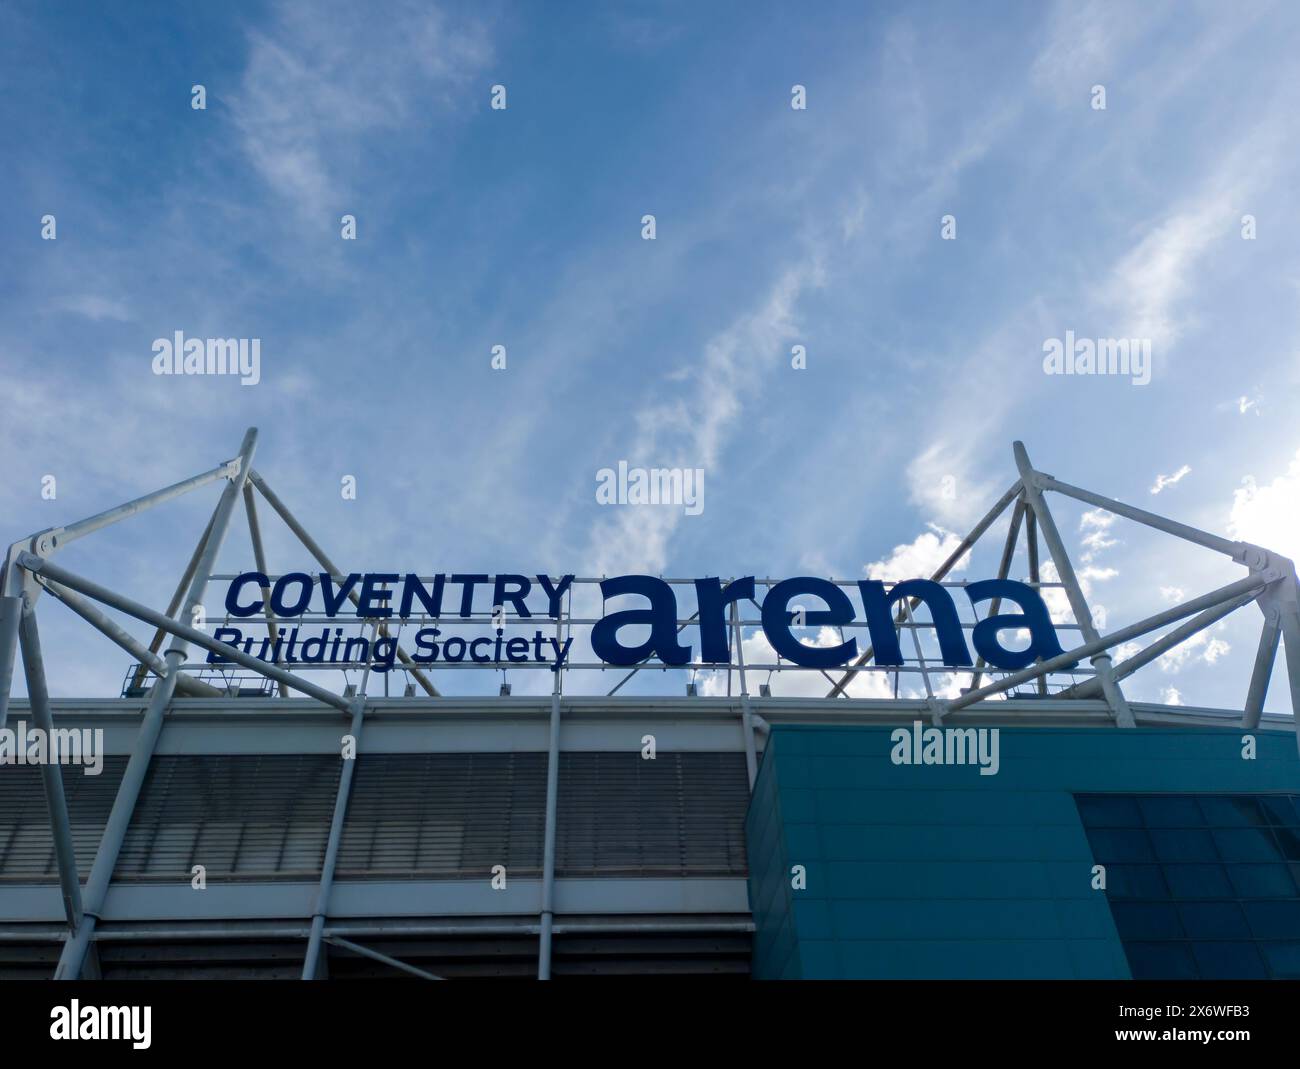 Le CBS Arena abrite le Coventry City Football Club dans les West Midlands, au Royaume-Uni Banque D'Images